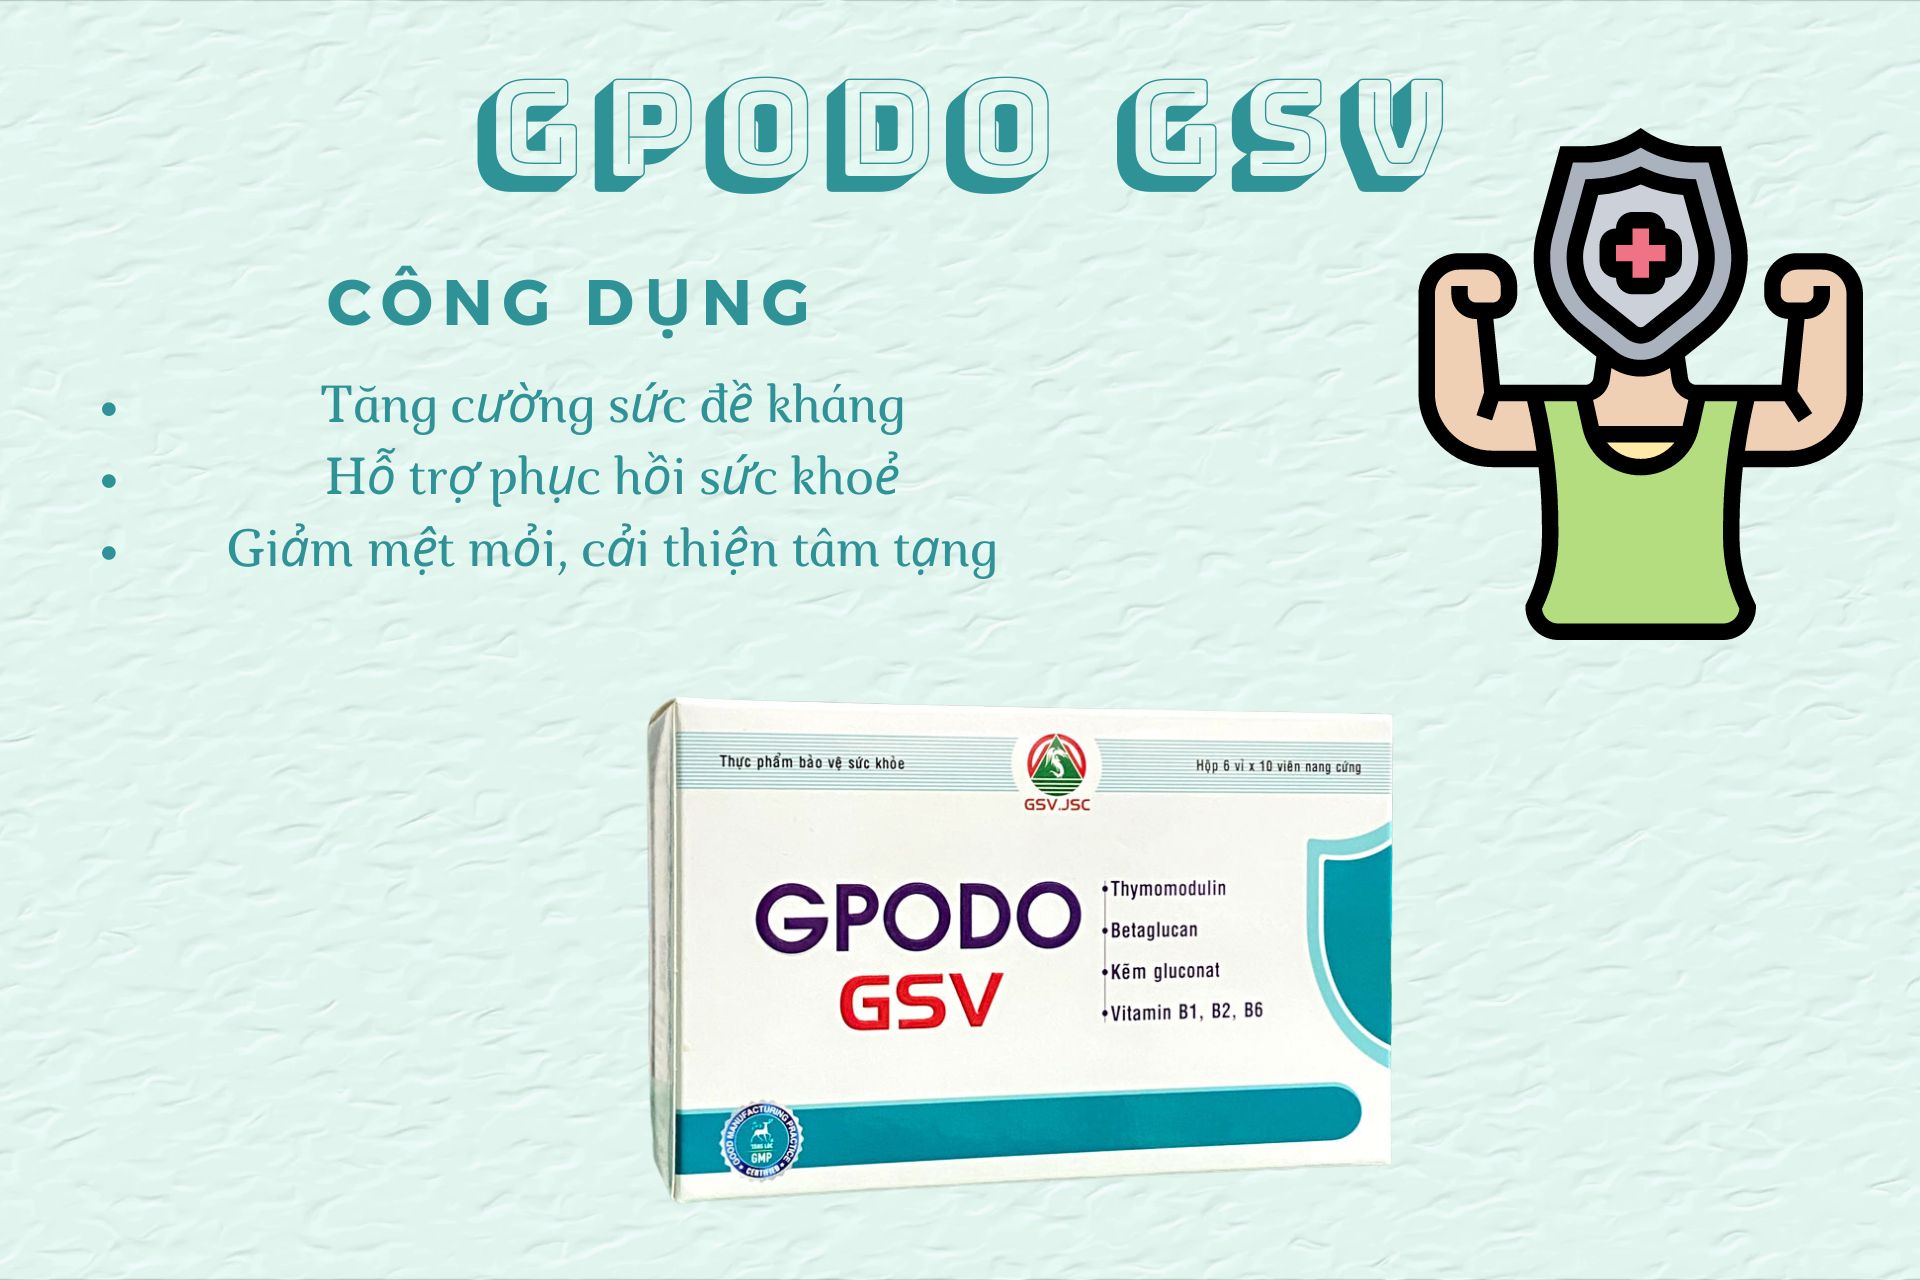 GPODO GSV dùng được cho trẻ từ 6 tuổi